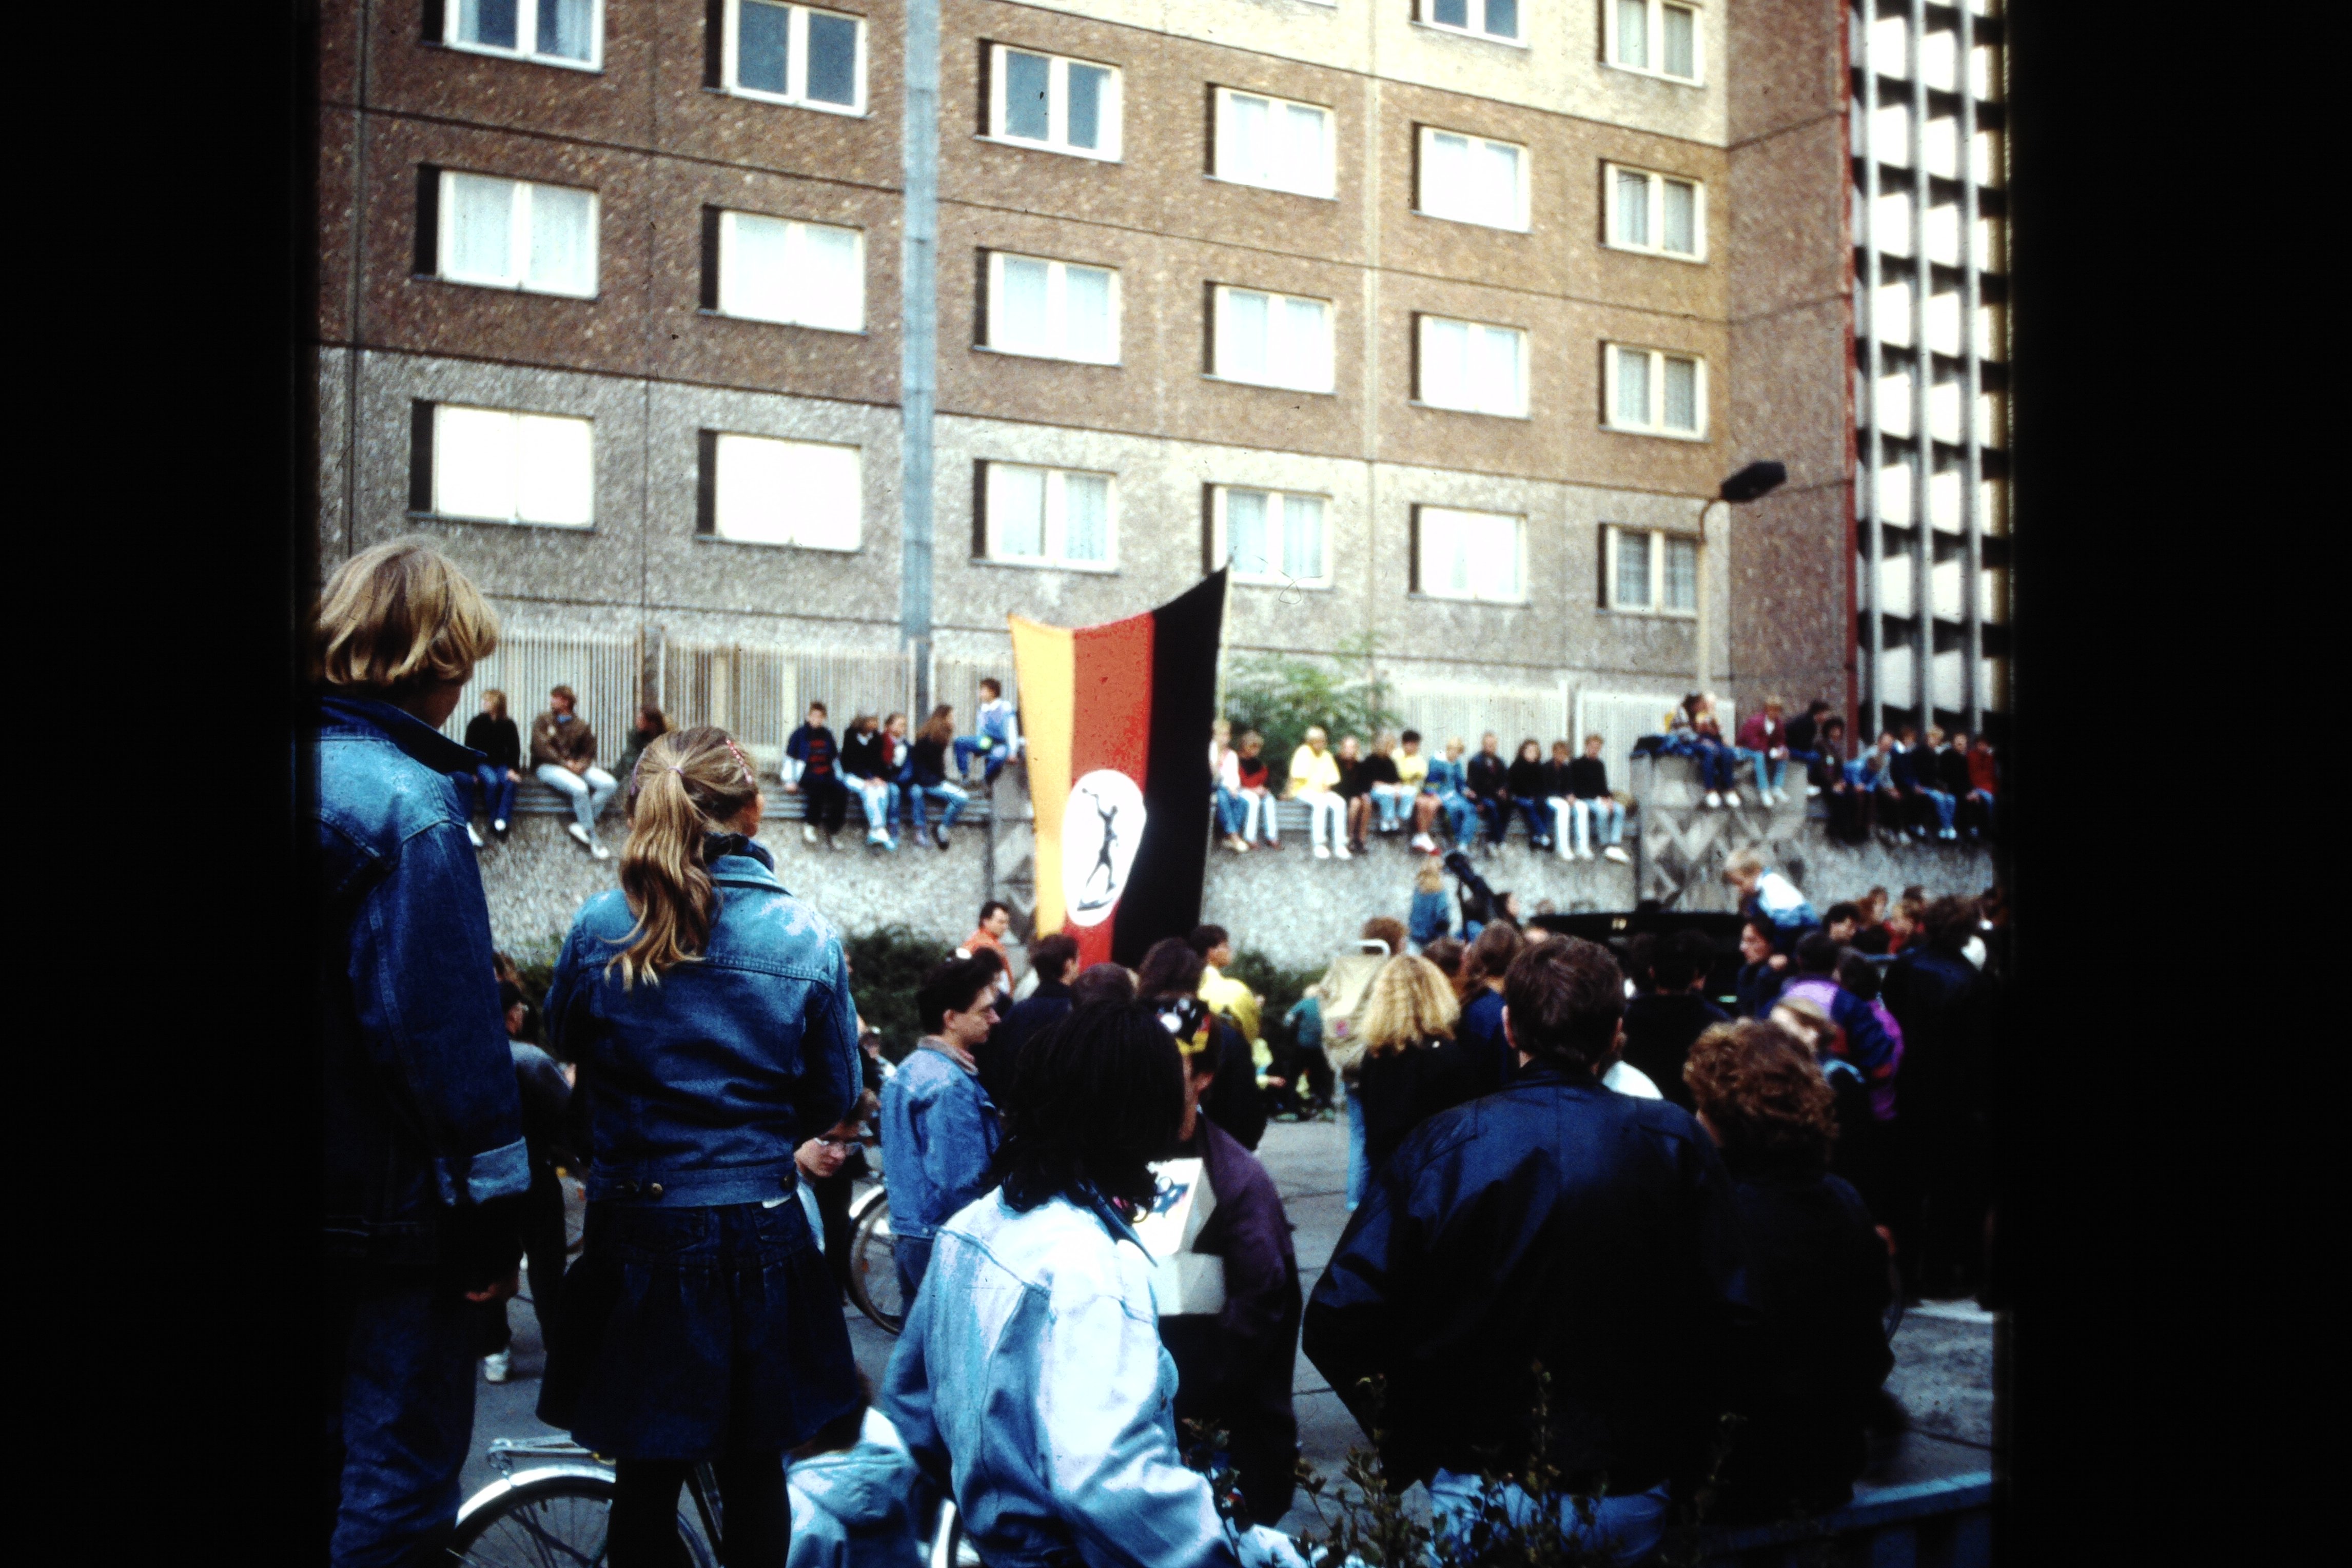 Zentrale der Staatsicherheit in Berlin: Teilnehmer einer Demonstration vor der besetzten Stasi-Zentrale (DDR Geschichtsmuseum im Dokumentationszentrum Perleberg CC BY-SA)